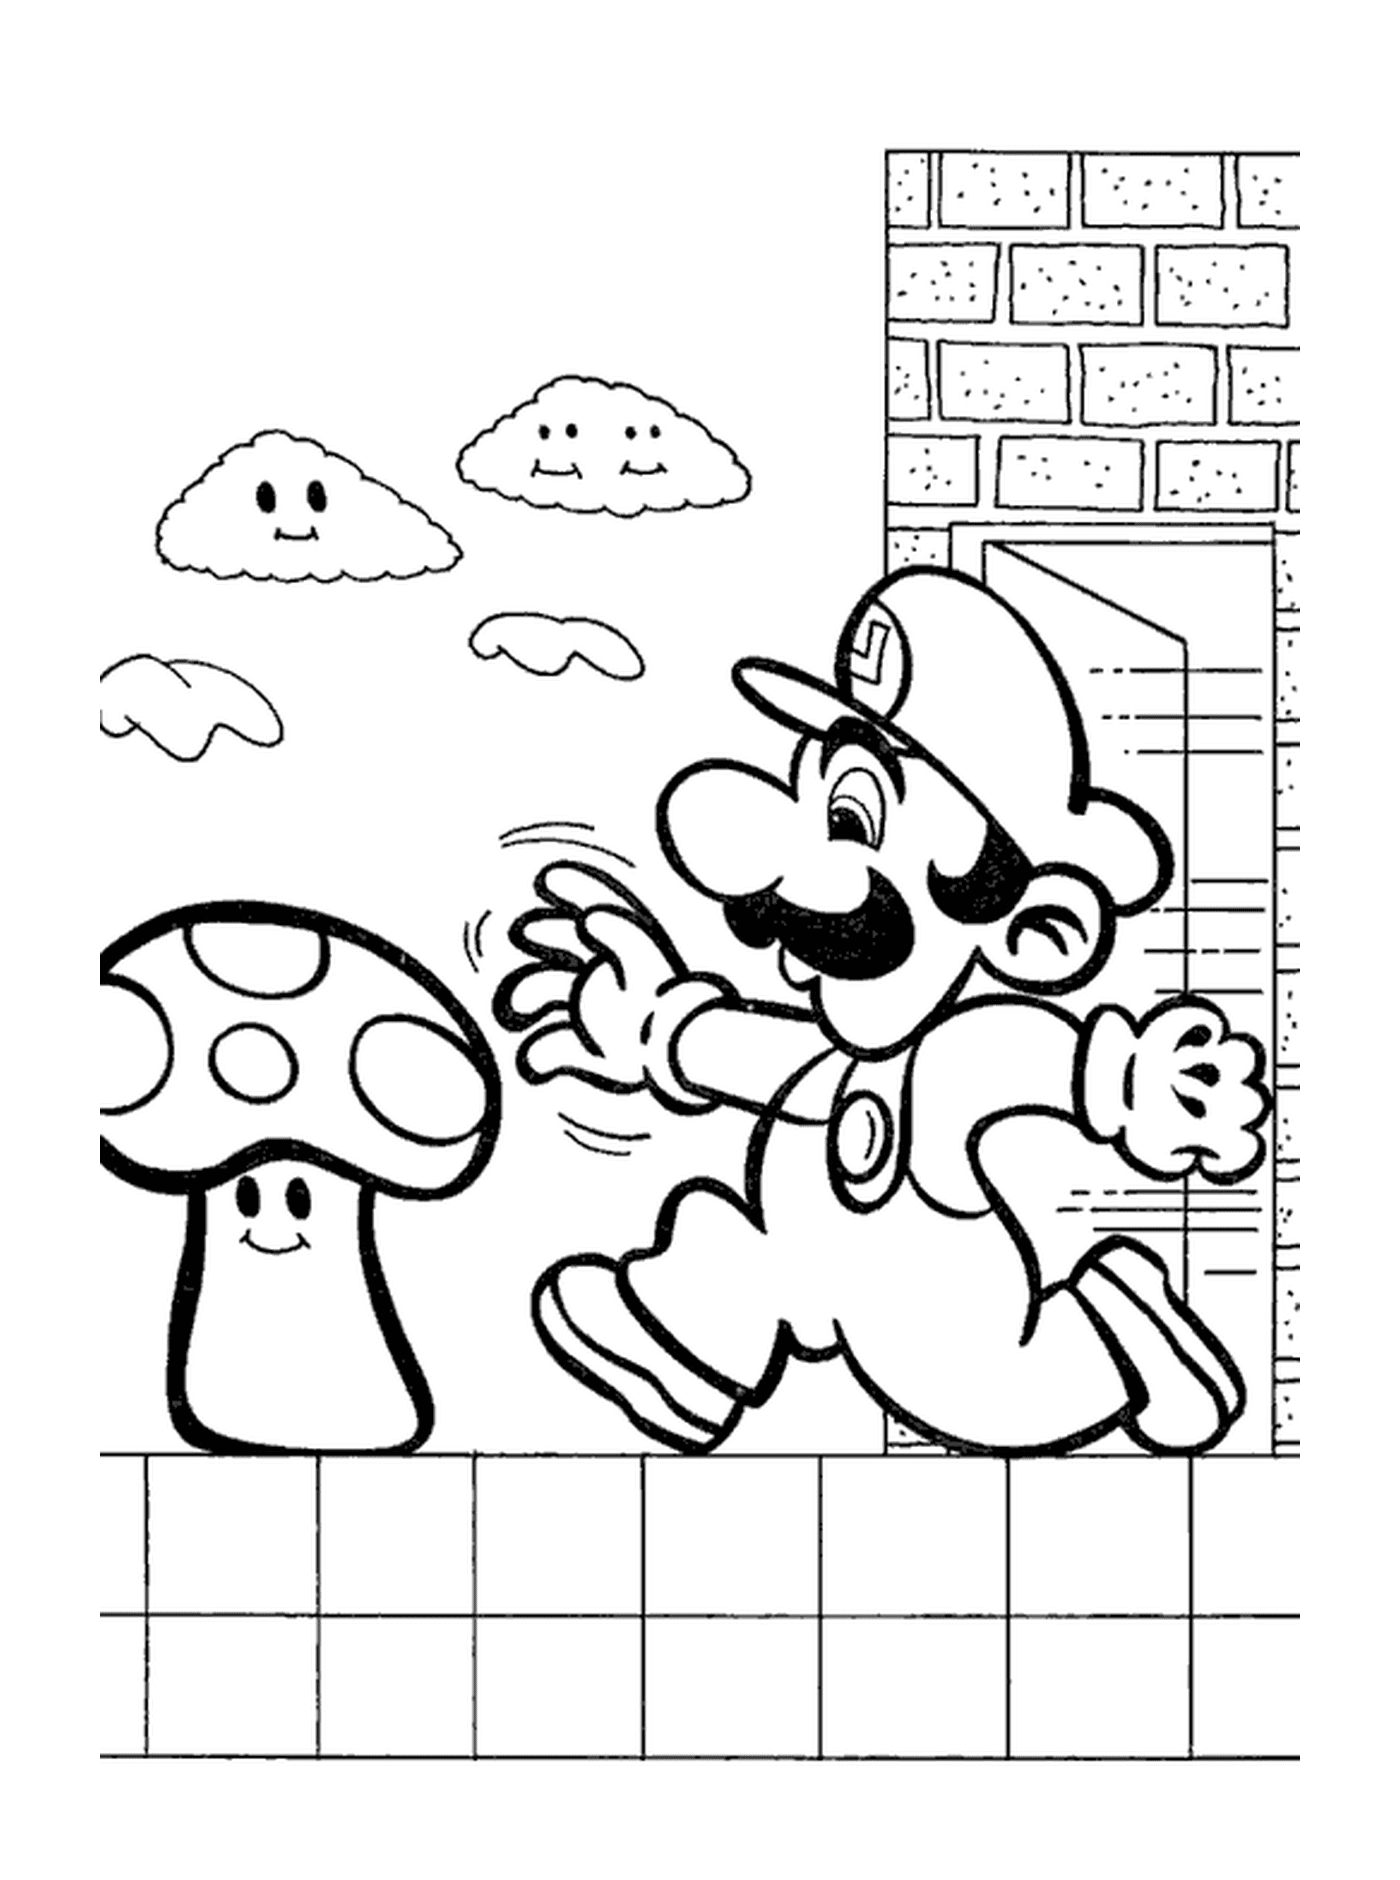  Mario Bros runs with a fungus 